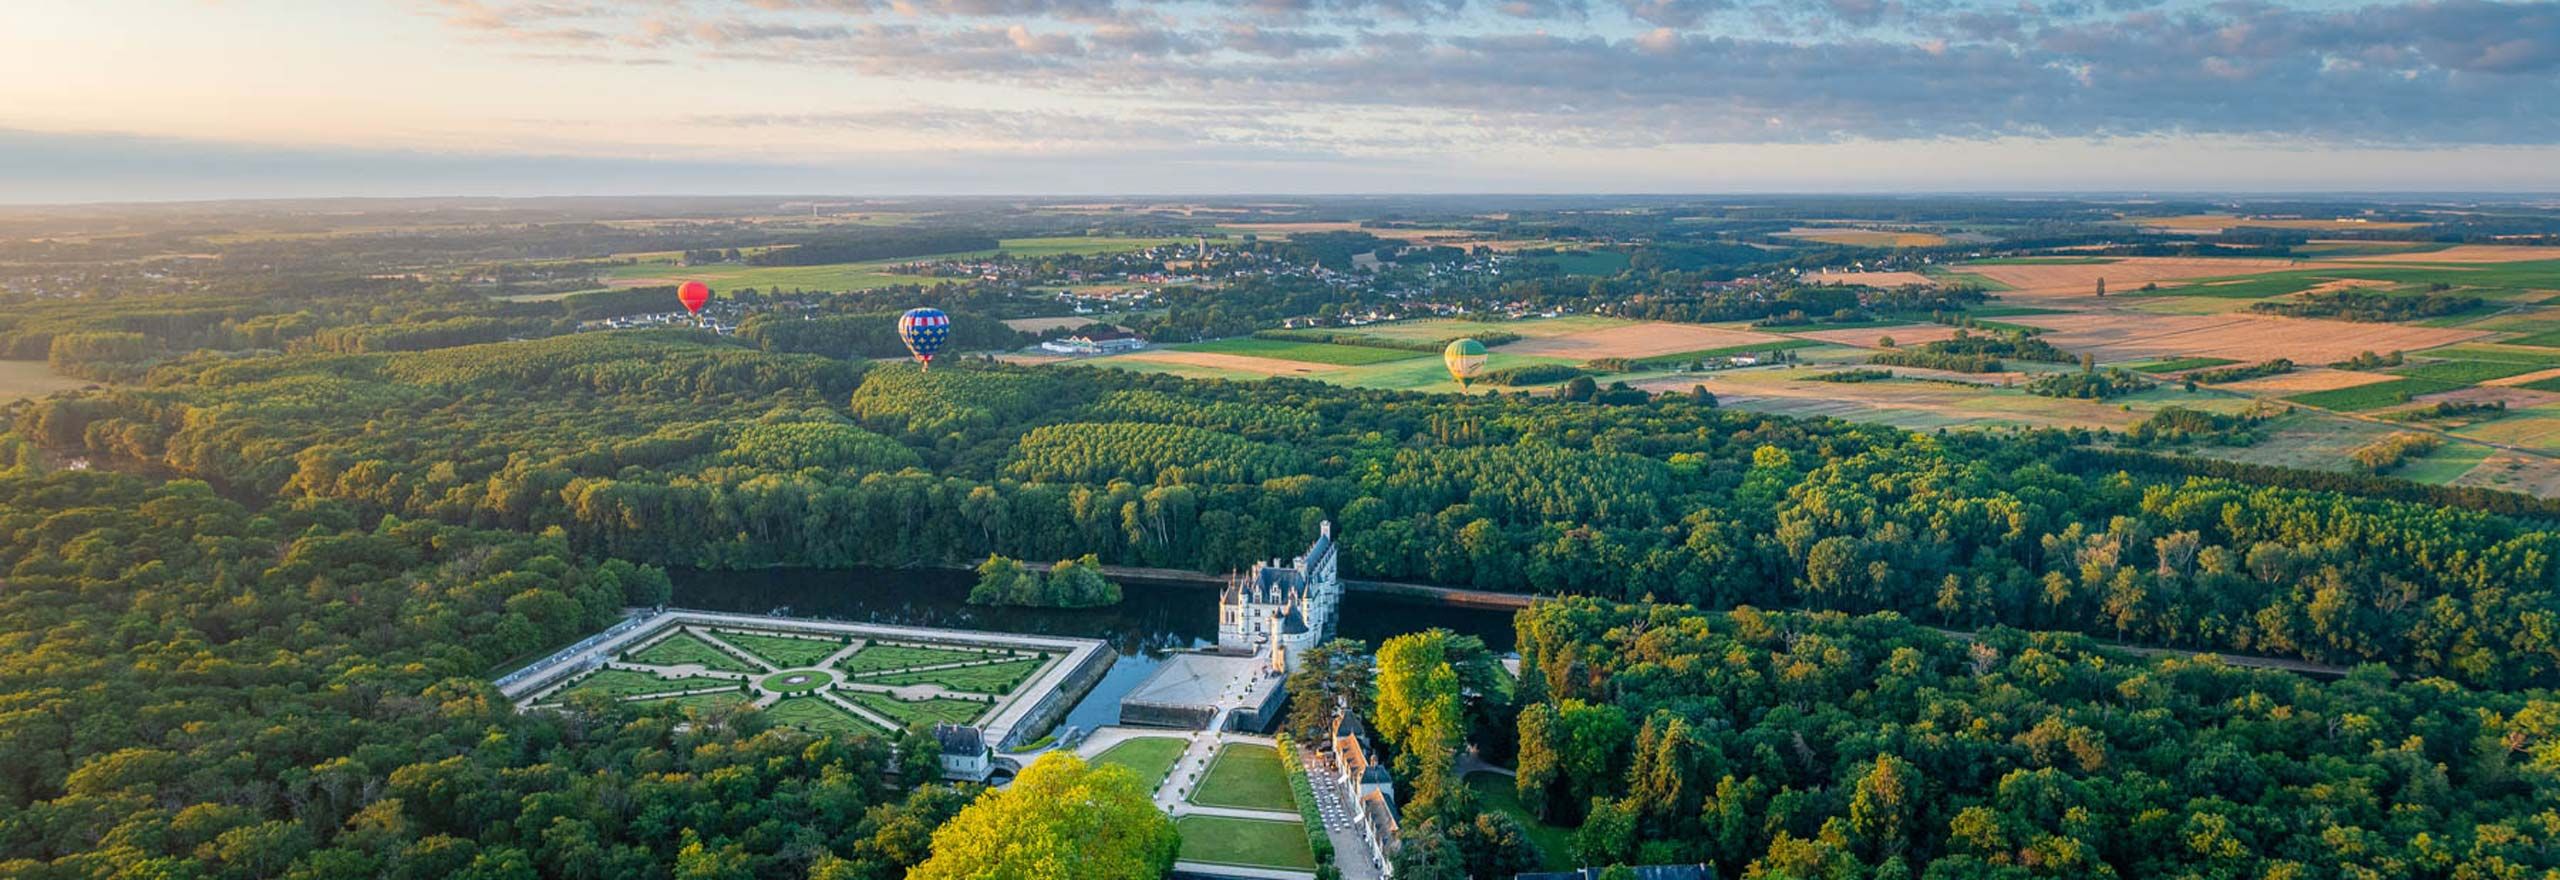 Vol en montgolfières au-dessus des châteaux de la Loire